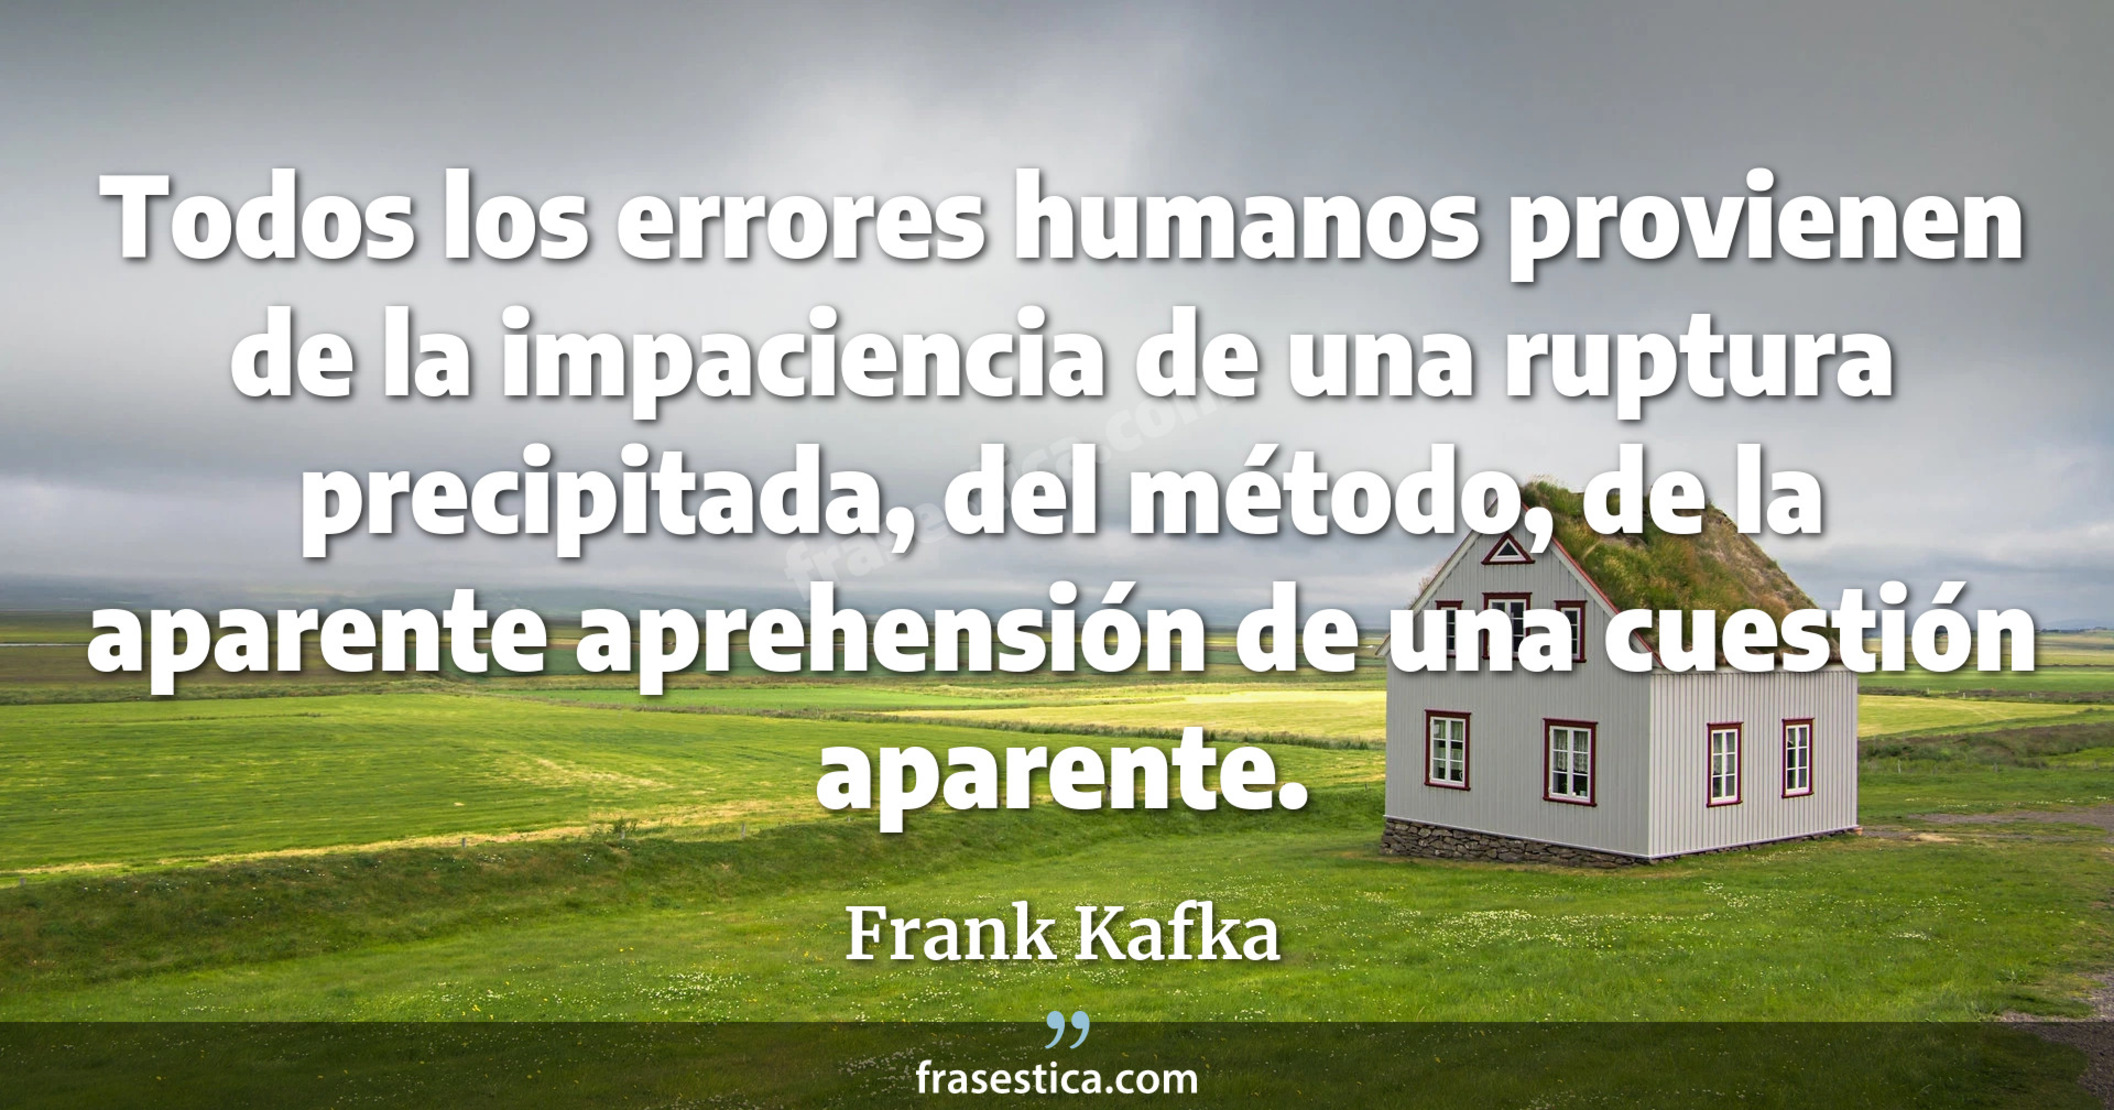 Todos los errores humanos provienen de la impaciencia de una ruptura precipitada, del método, de la aparente aprehensión de una cuestión aparente. - Frank Kafka